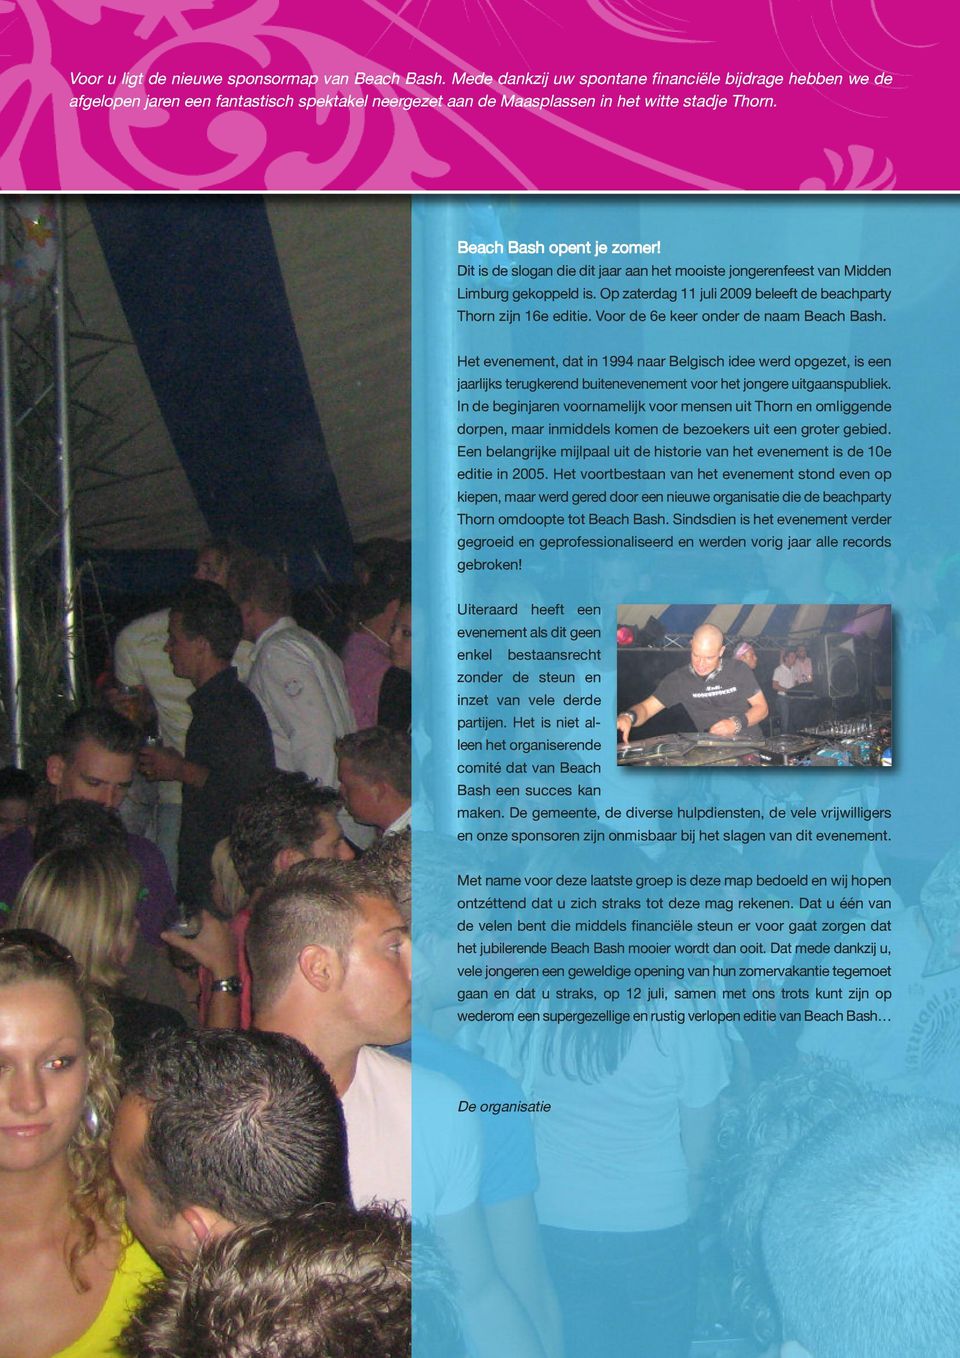 Dit is de slogan die dit jaar aan het mooiste jongerenfeest van Midden Limburg gekoppeld is. Op zaterdag 11 juli 2009 beleeft de beachparty Thorn zijn 16e editie.